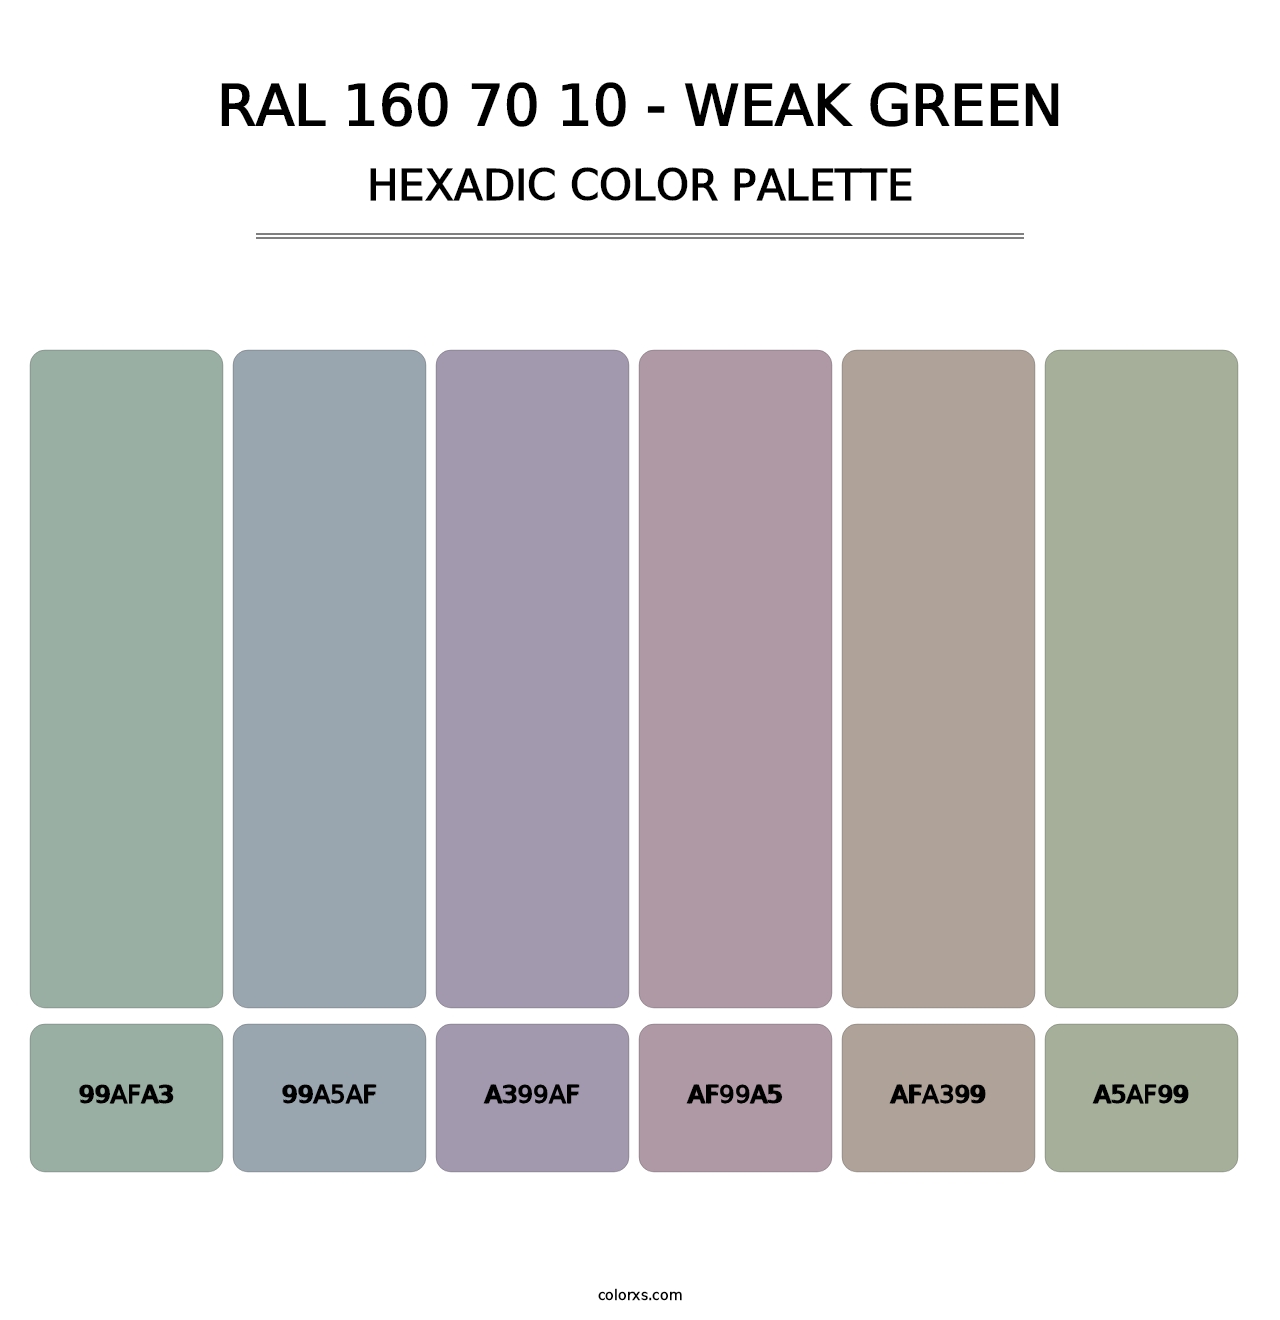 RAL 160 70 10 - Weak Green - Hexadic Color Palette